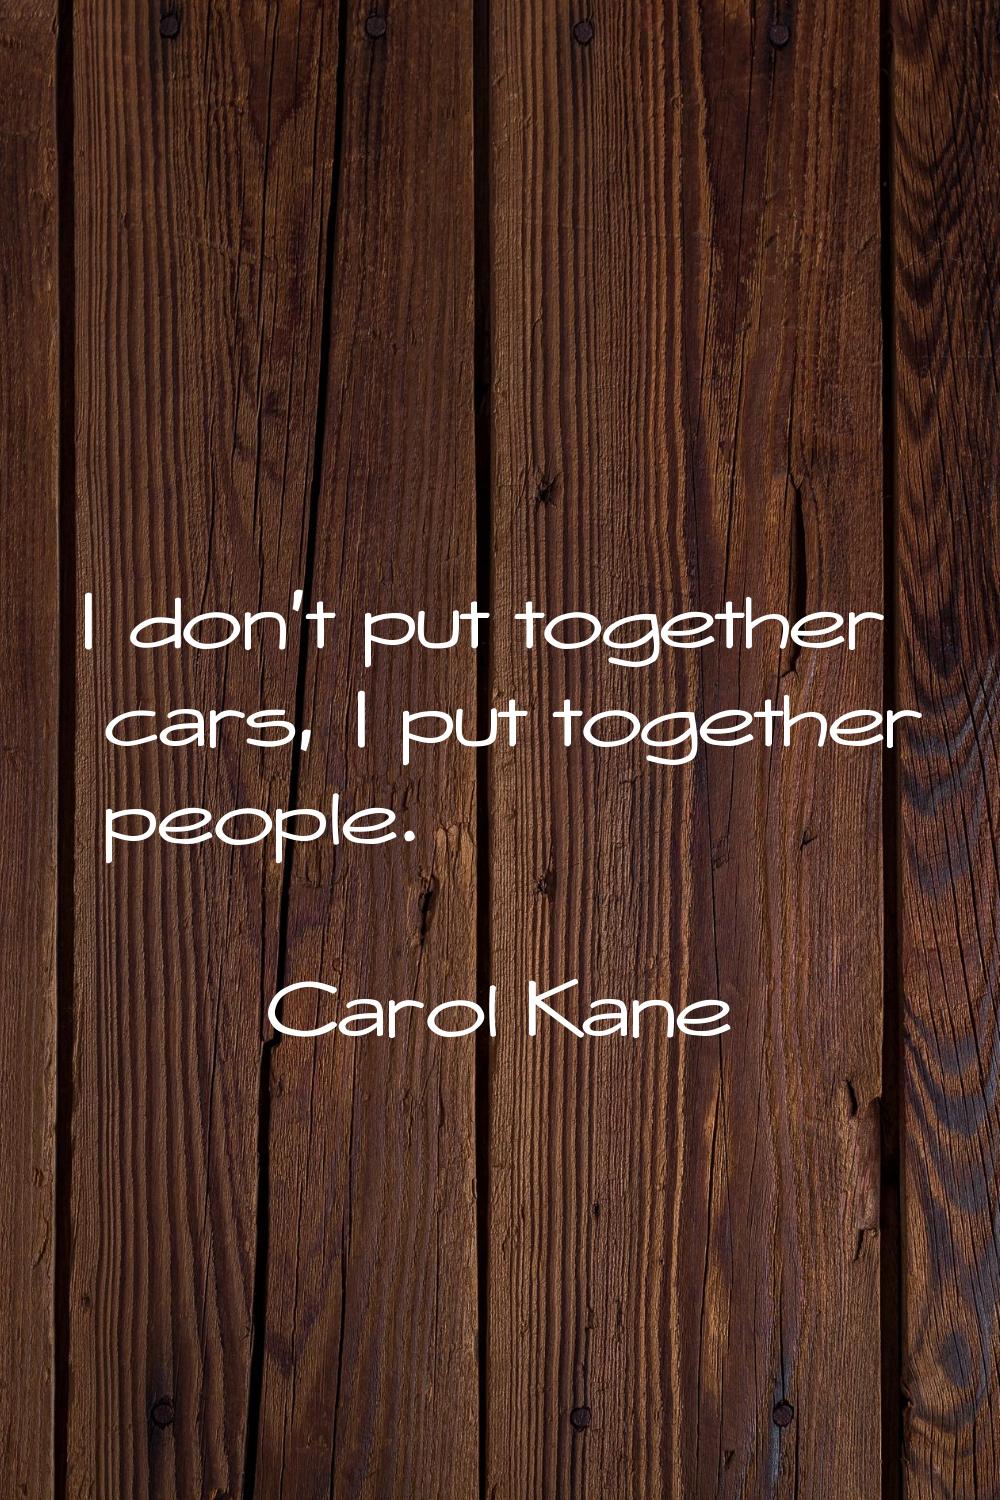 I don't put together cars, I put together people.